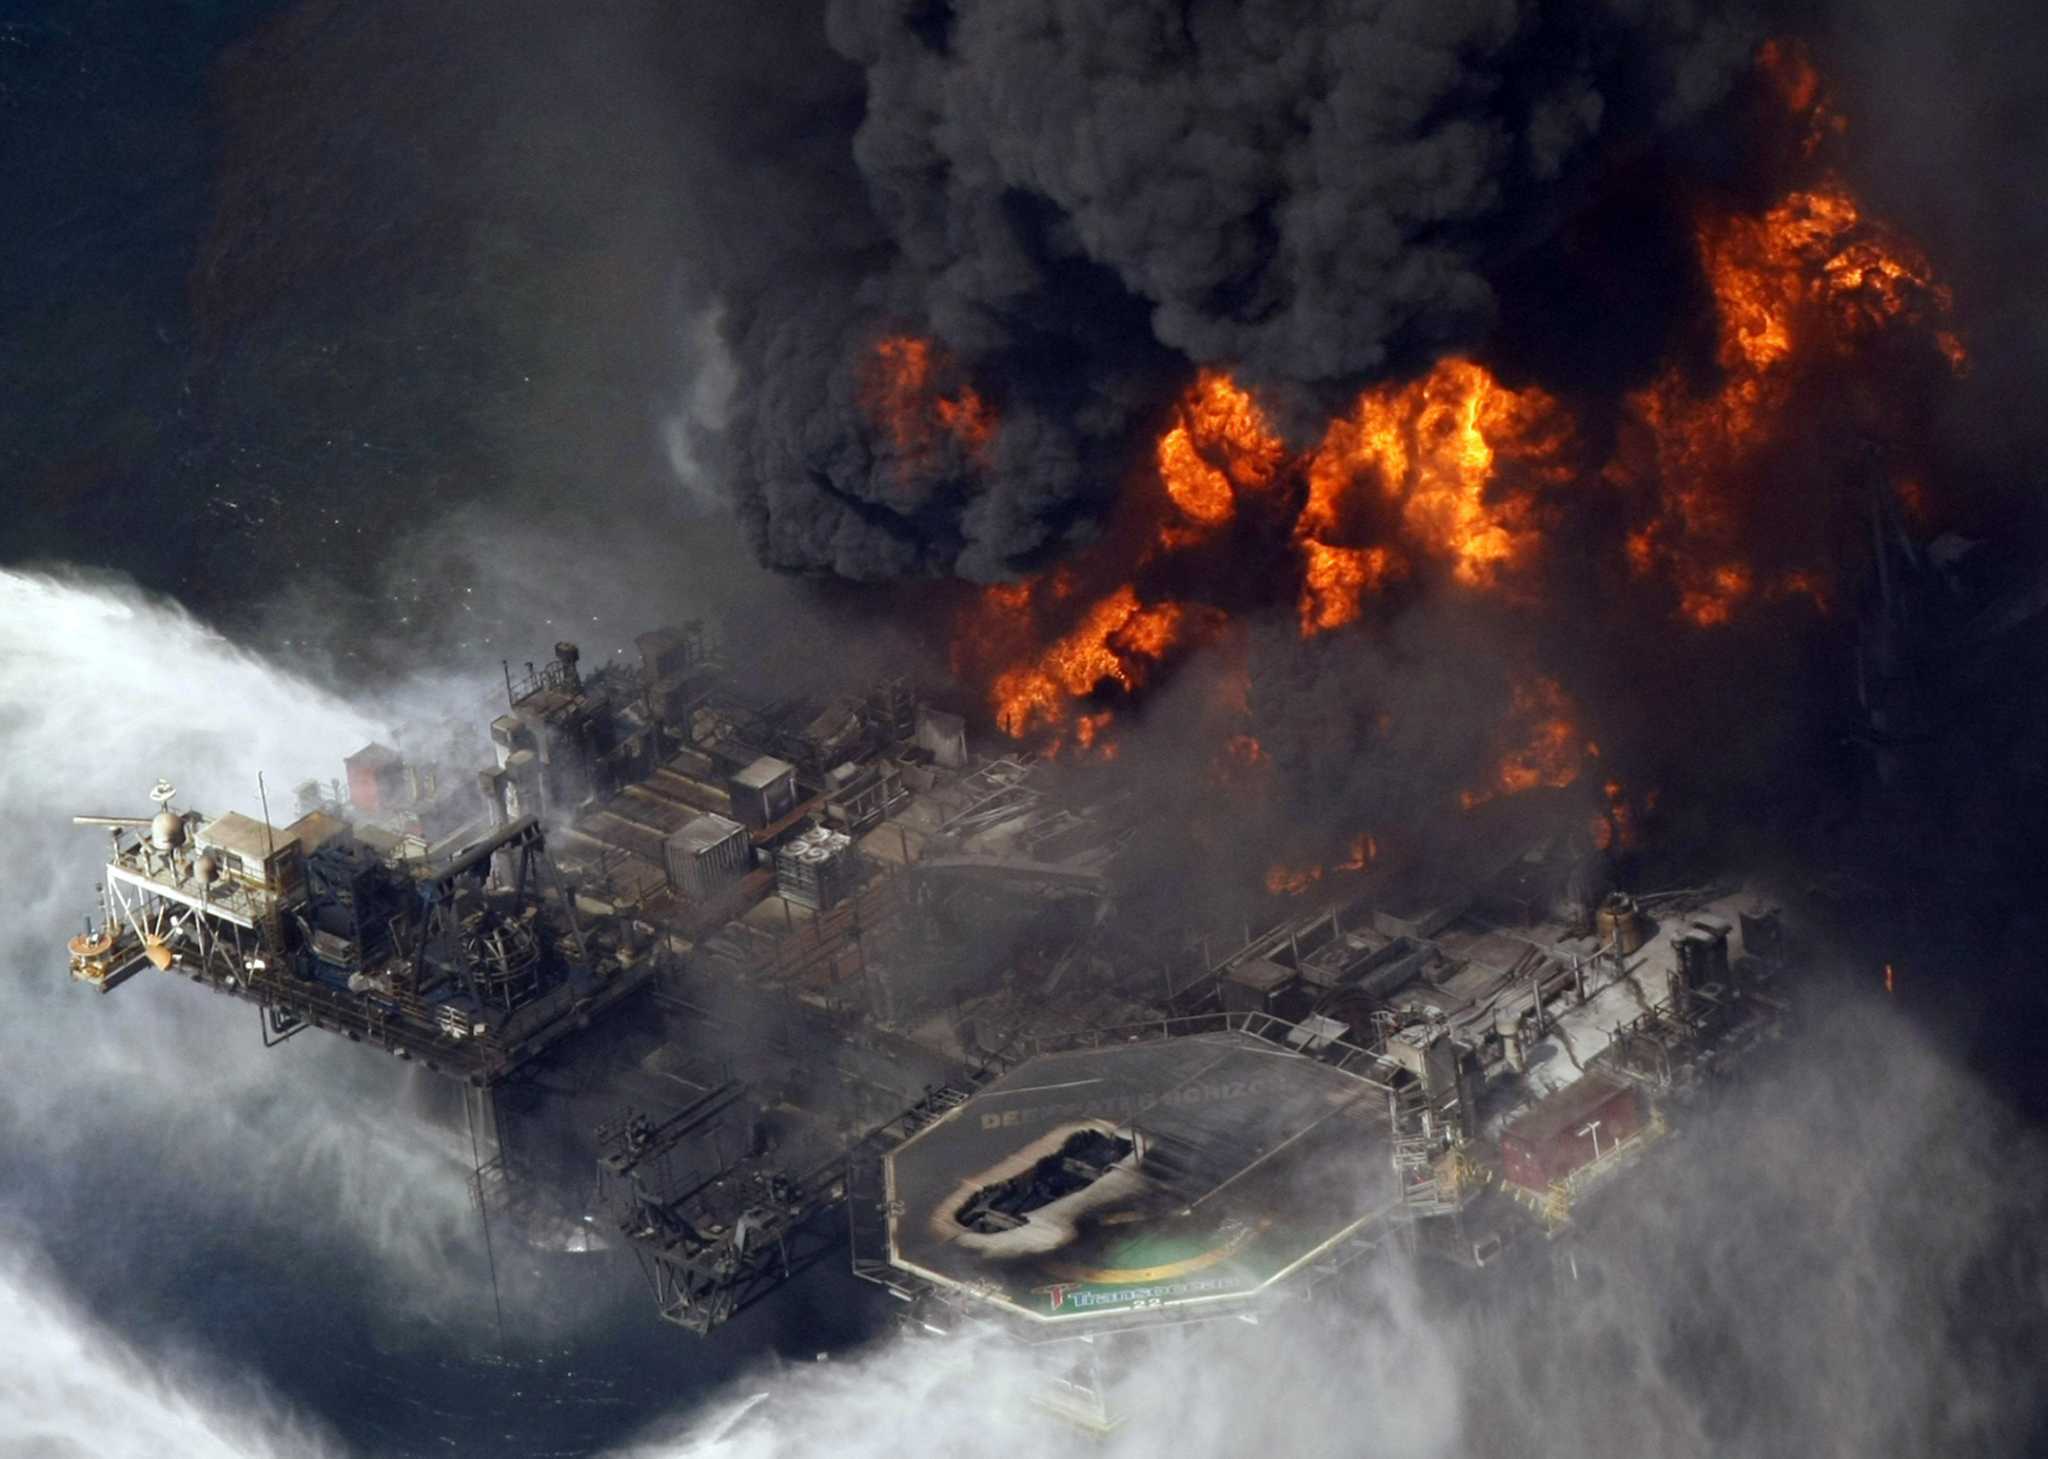 墨西哥湾原油泄漏事件图片